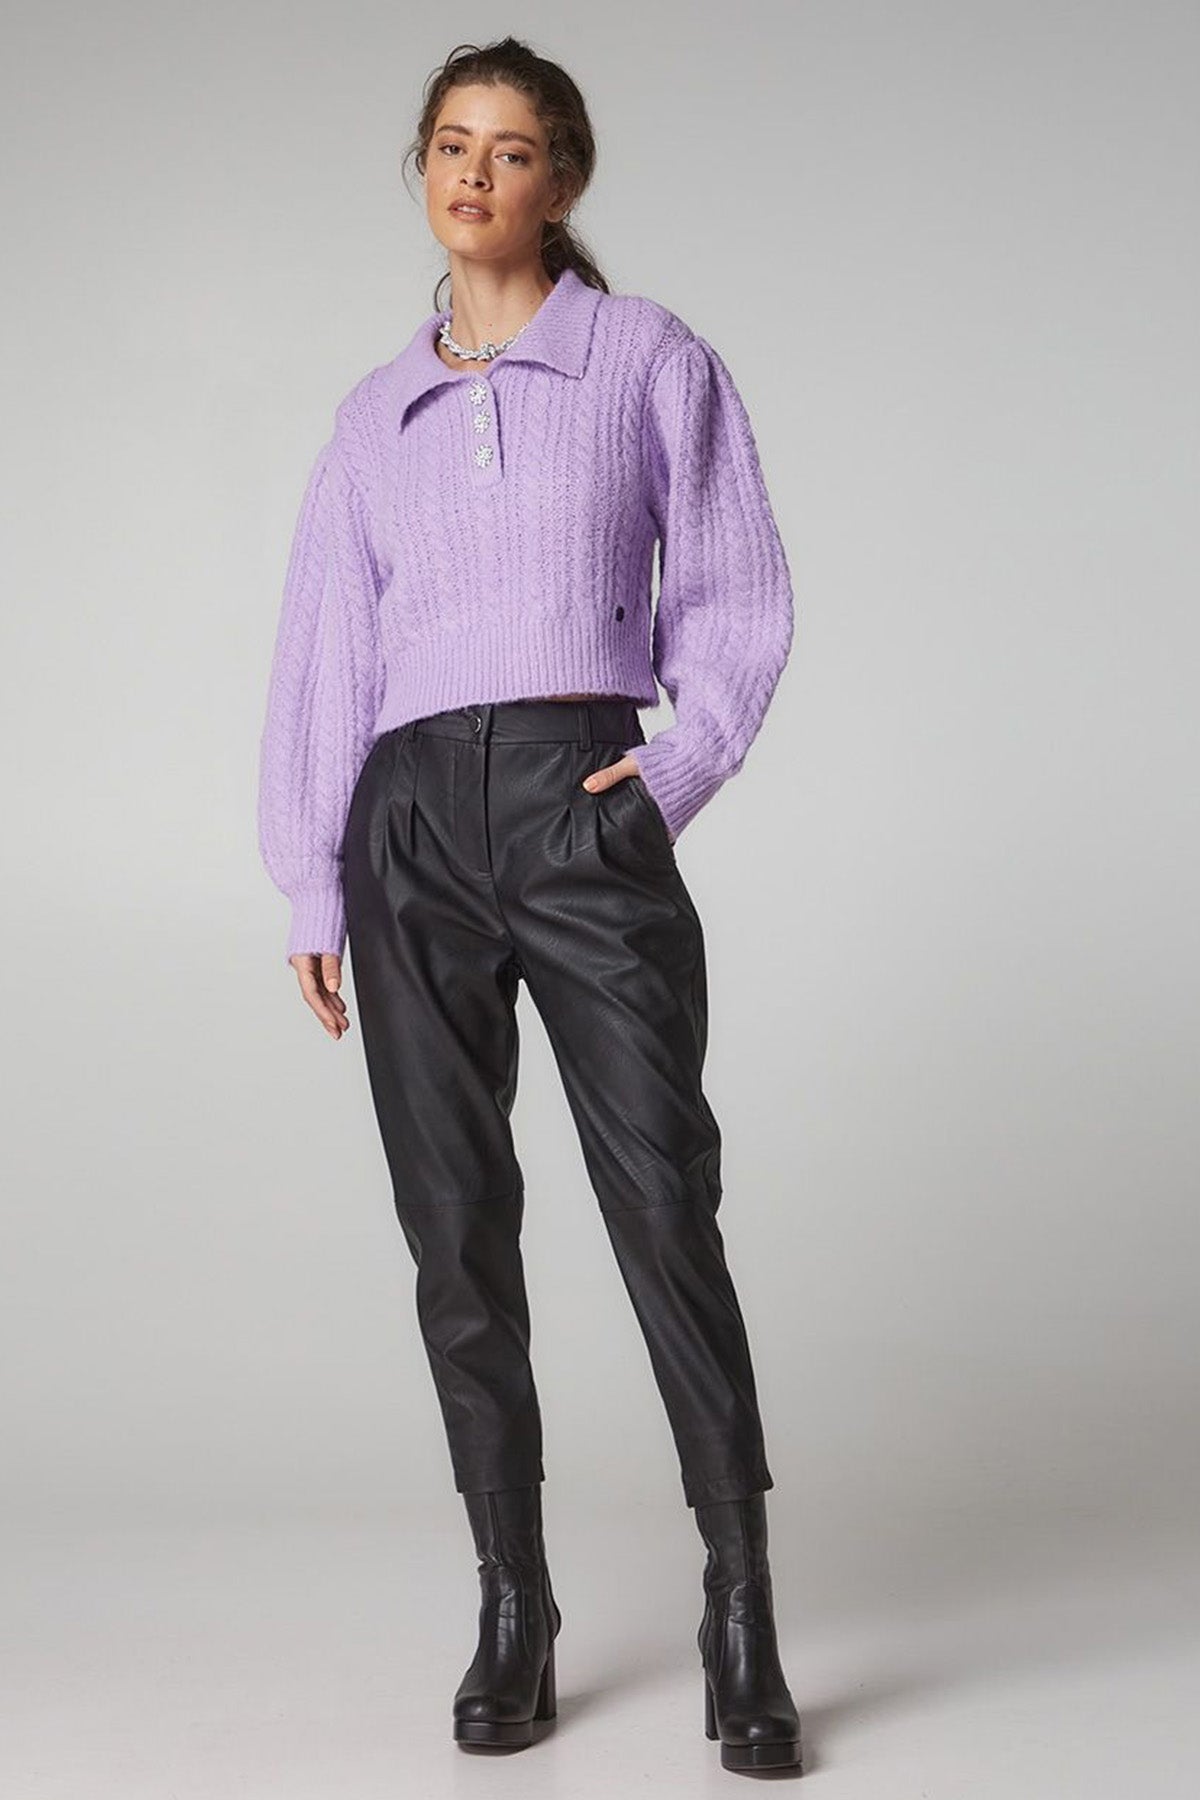 Bsb Beli Lastikli Çift Pile Deri Pantolon-Libas Trendy Fashion Store